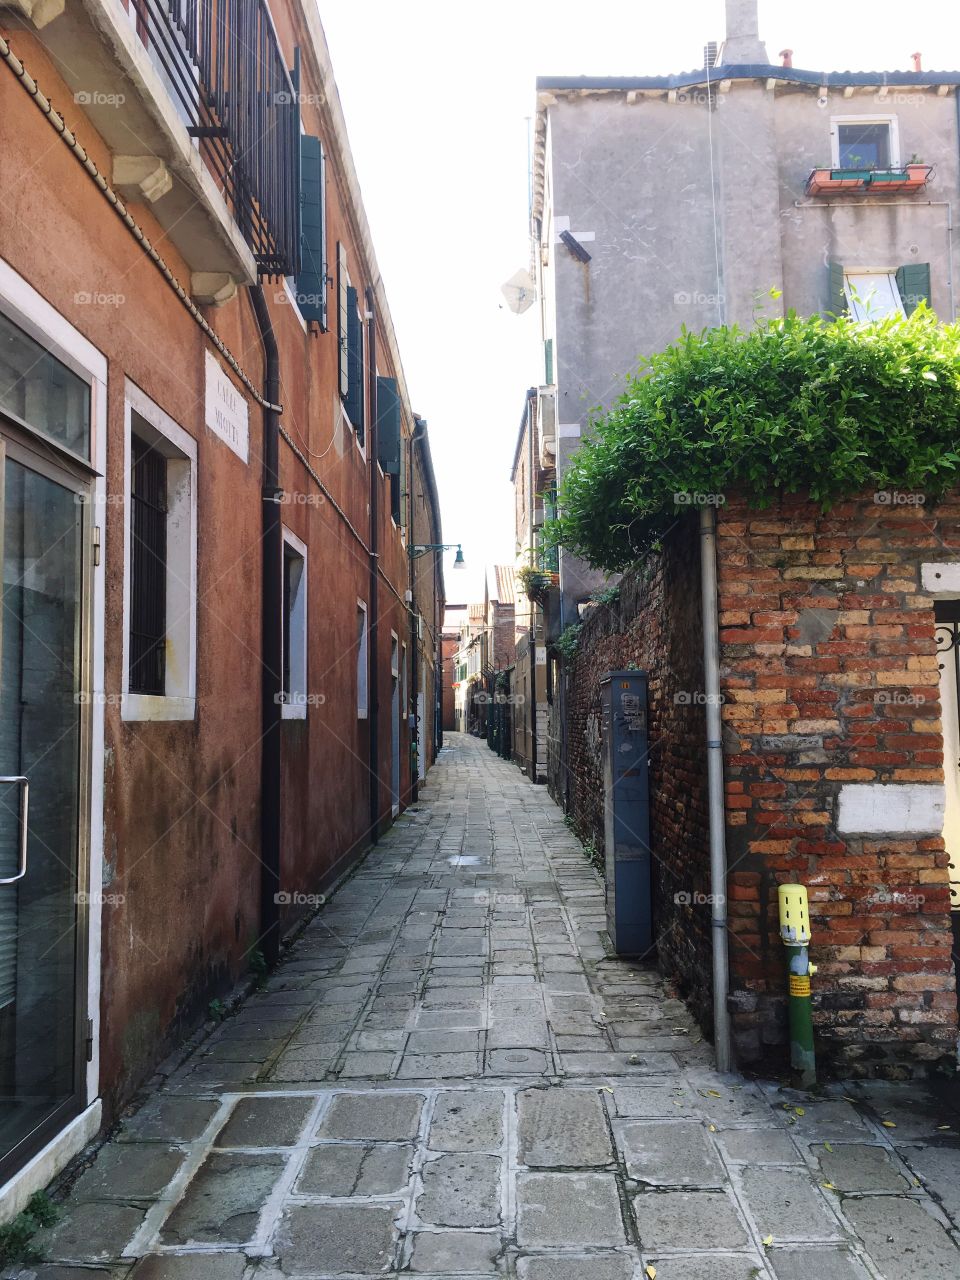 A narrow street in Italy